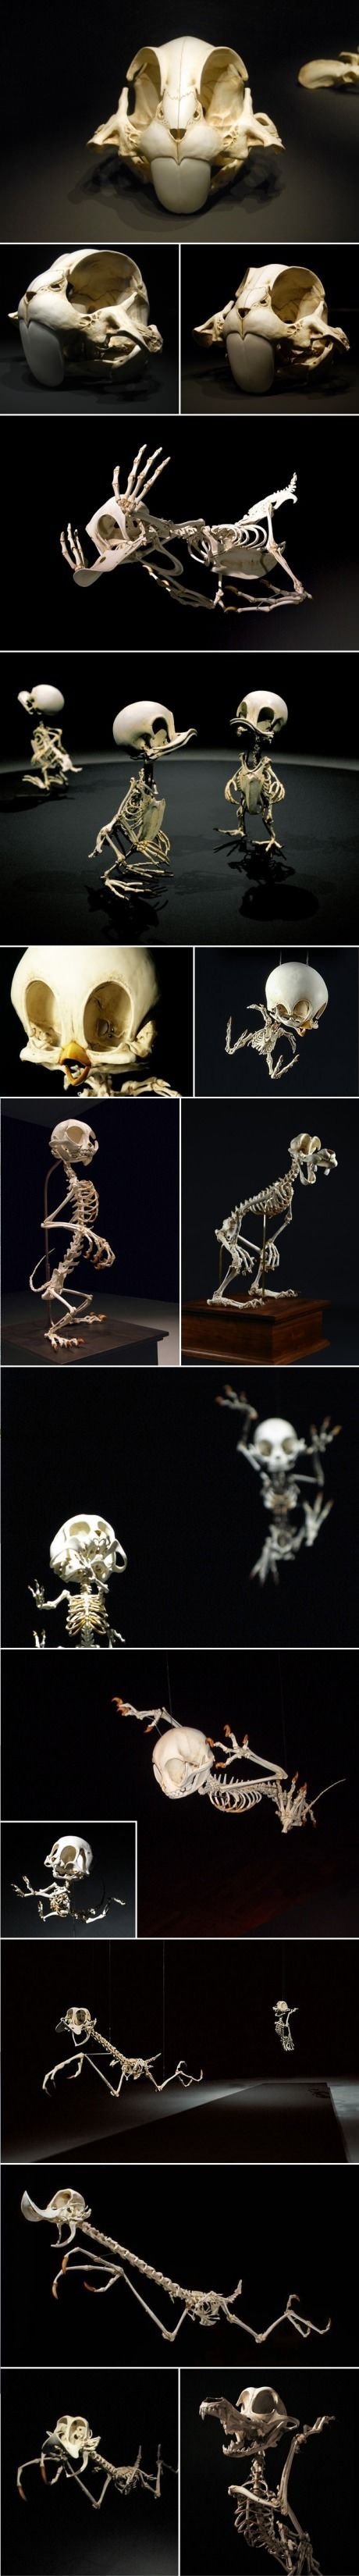 Skeletons of Disney Characters.